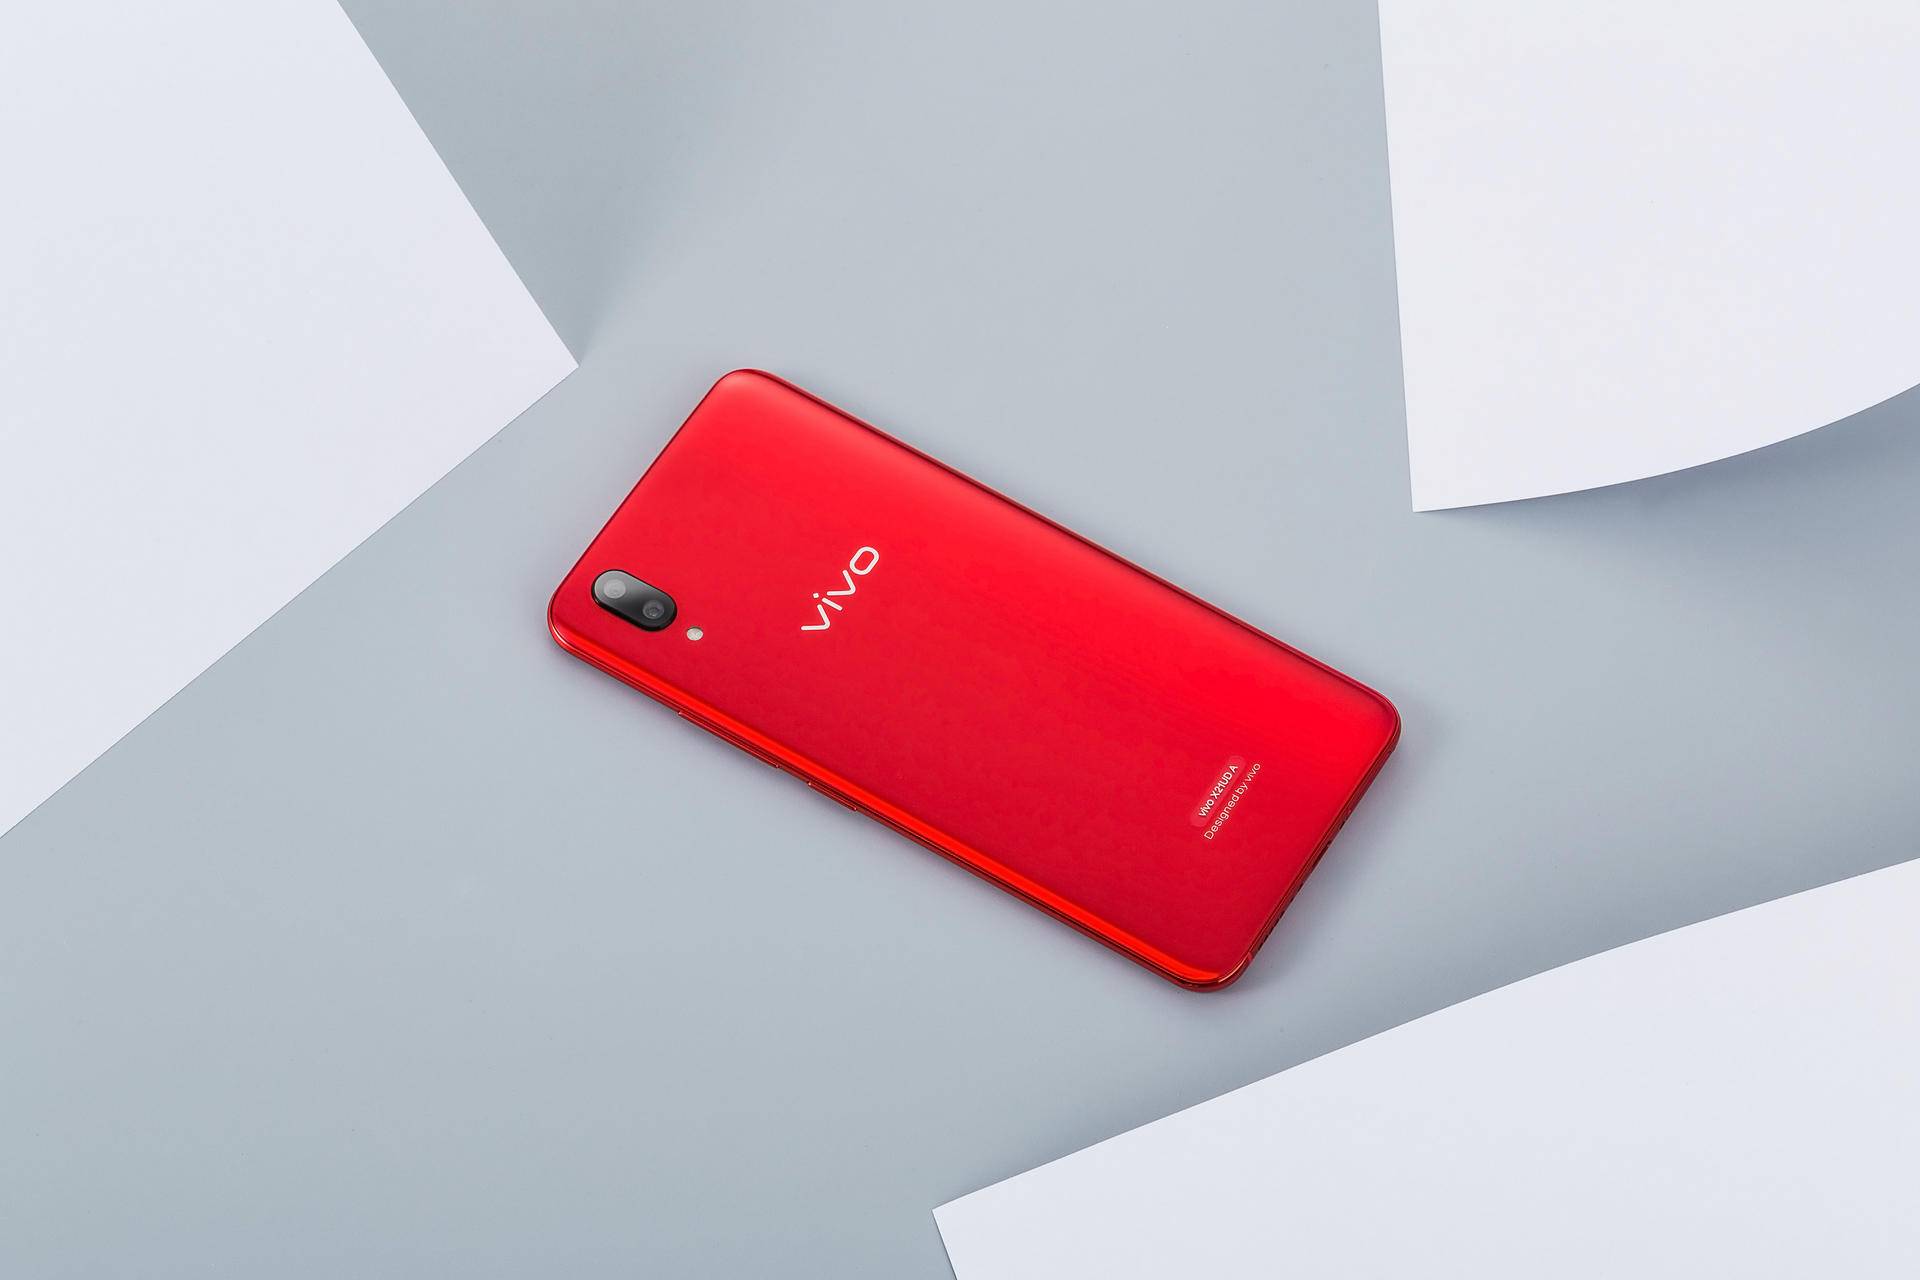 vivox21宝石红首发图赏手机中的法拉利颜值第一